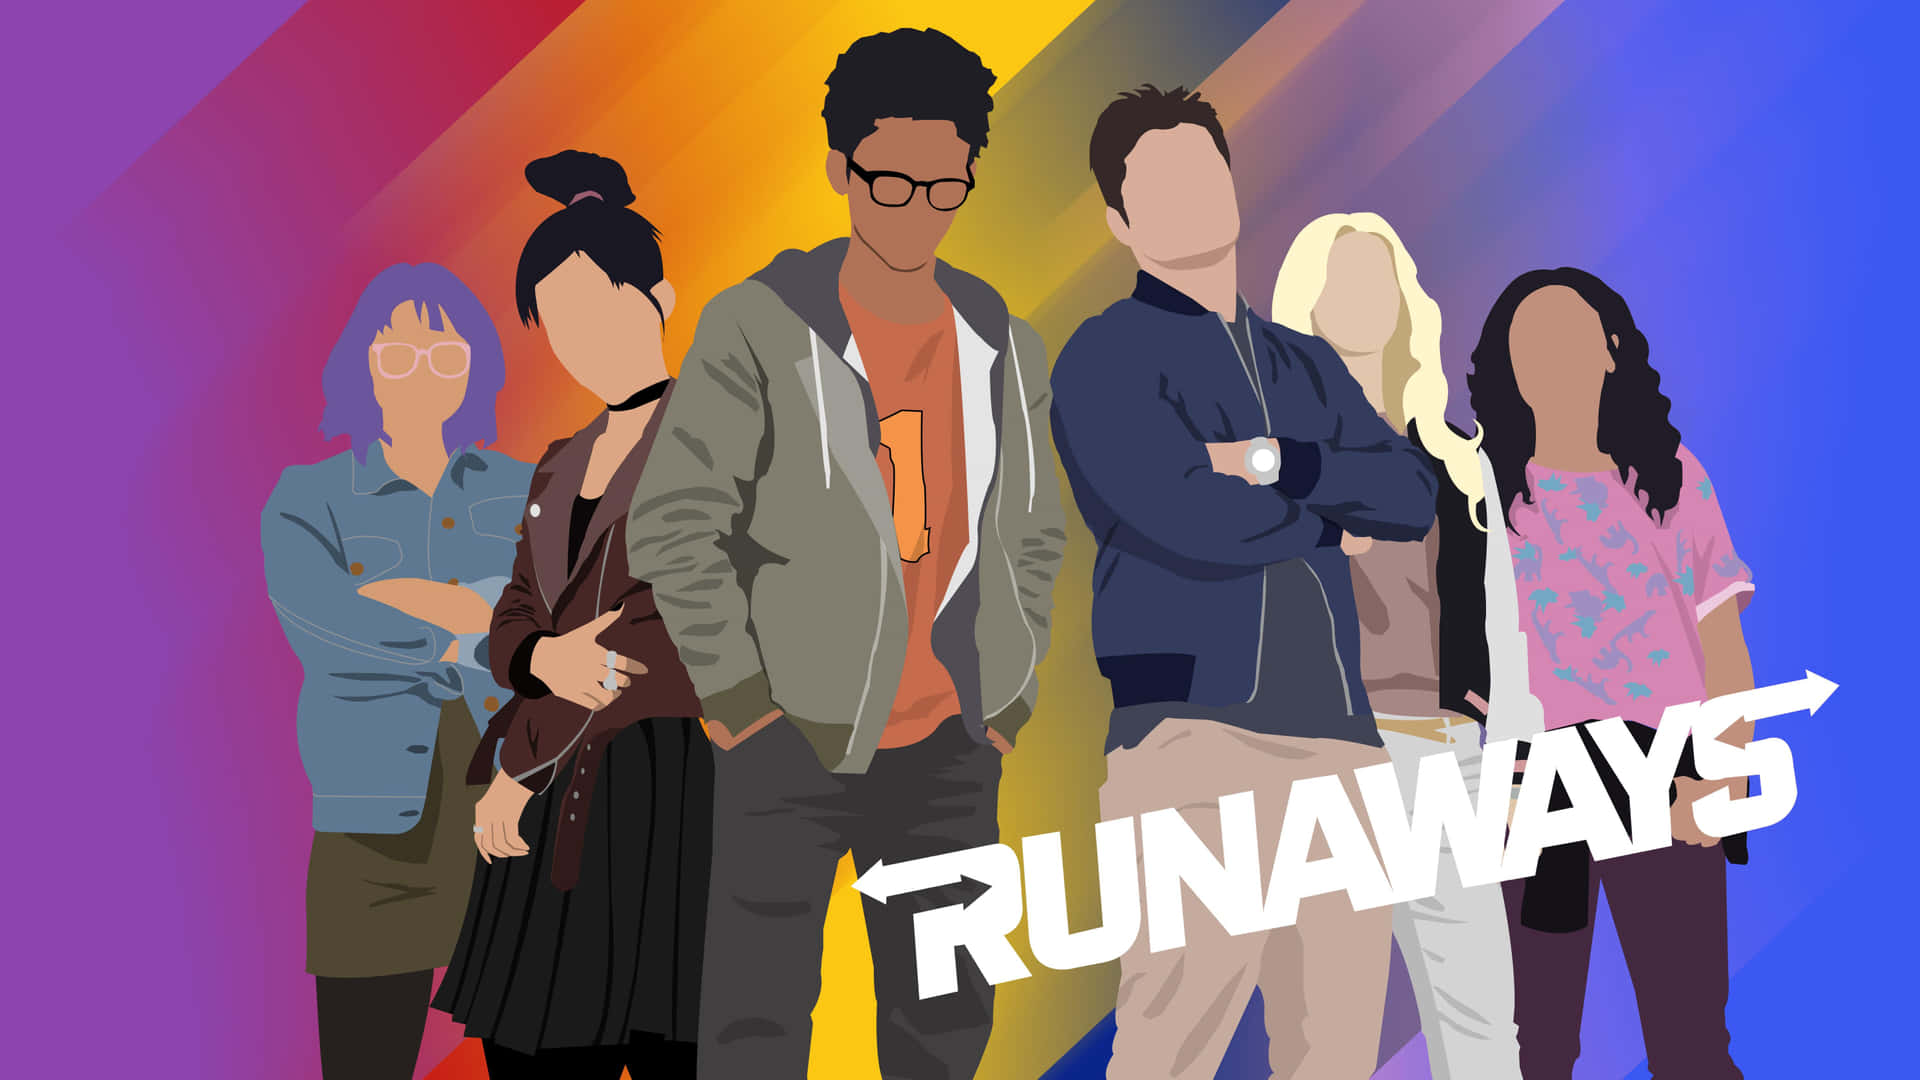 Unafoto De Grupo Dinámica Del Equipo De Los Runaways En Un Fondo Oscuro. Fondo de pantalla